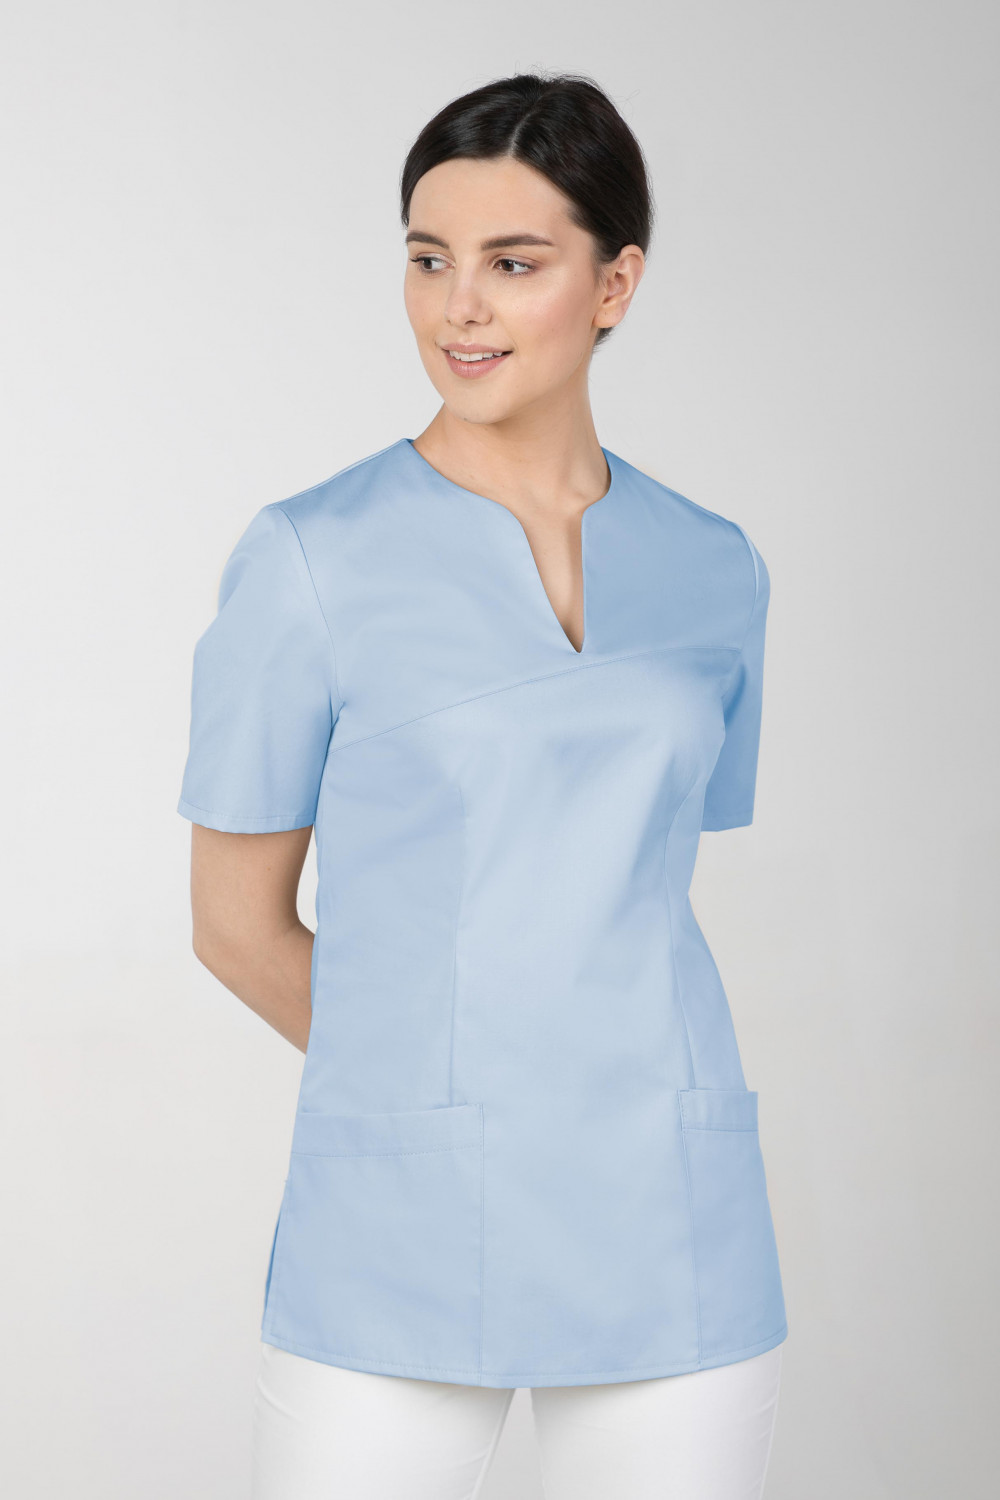 M-323X Bluza damska medyczna elastyczna kosmetyczna kolor błękit